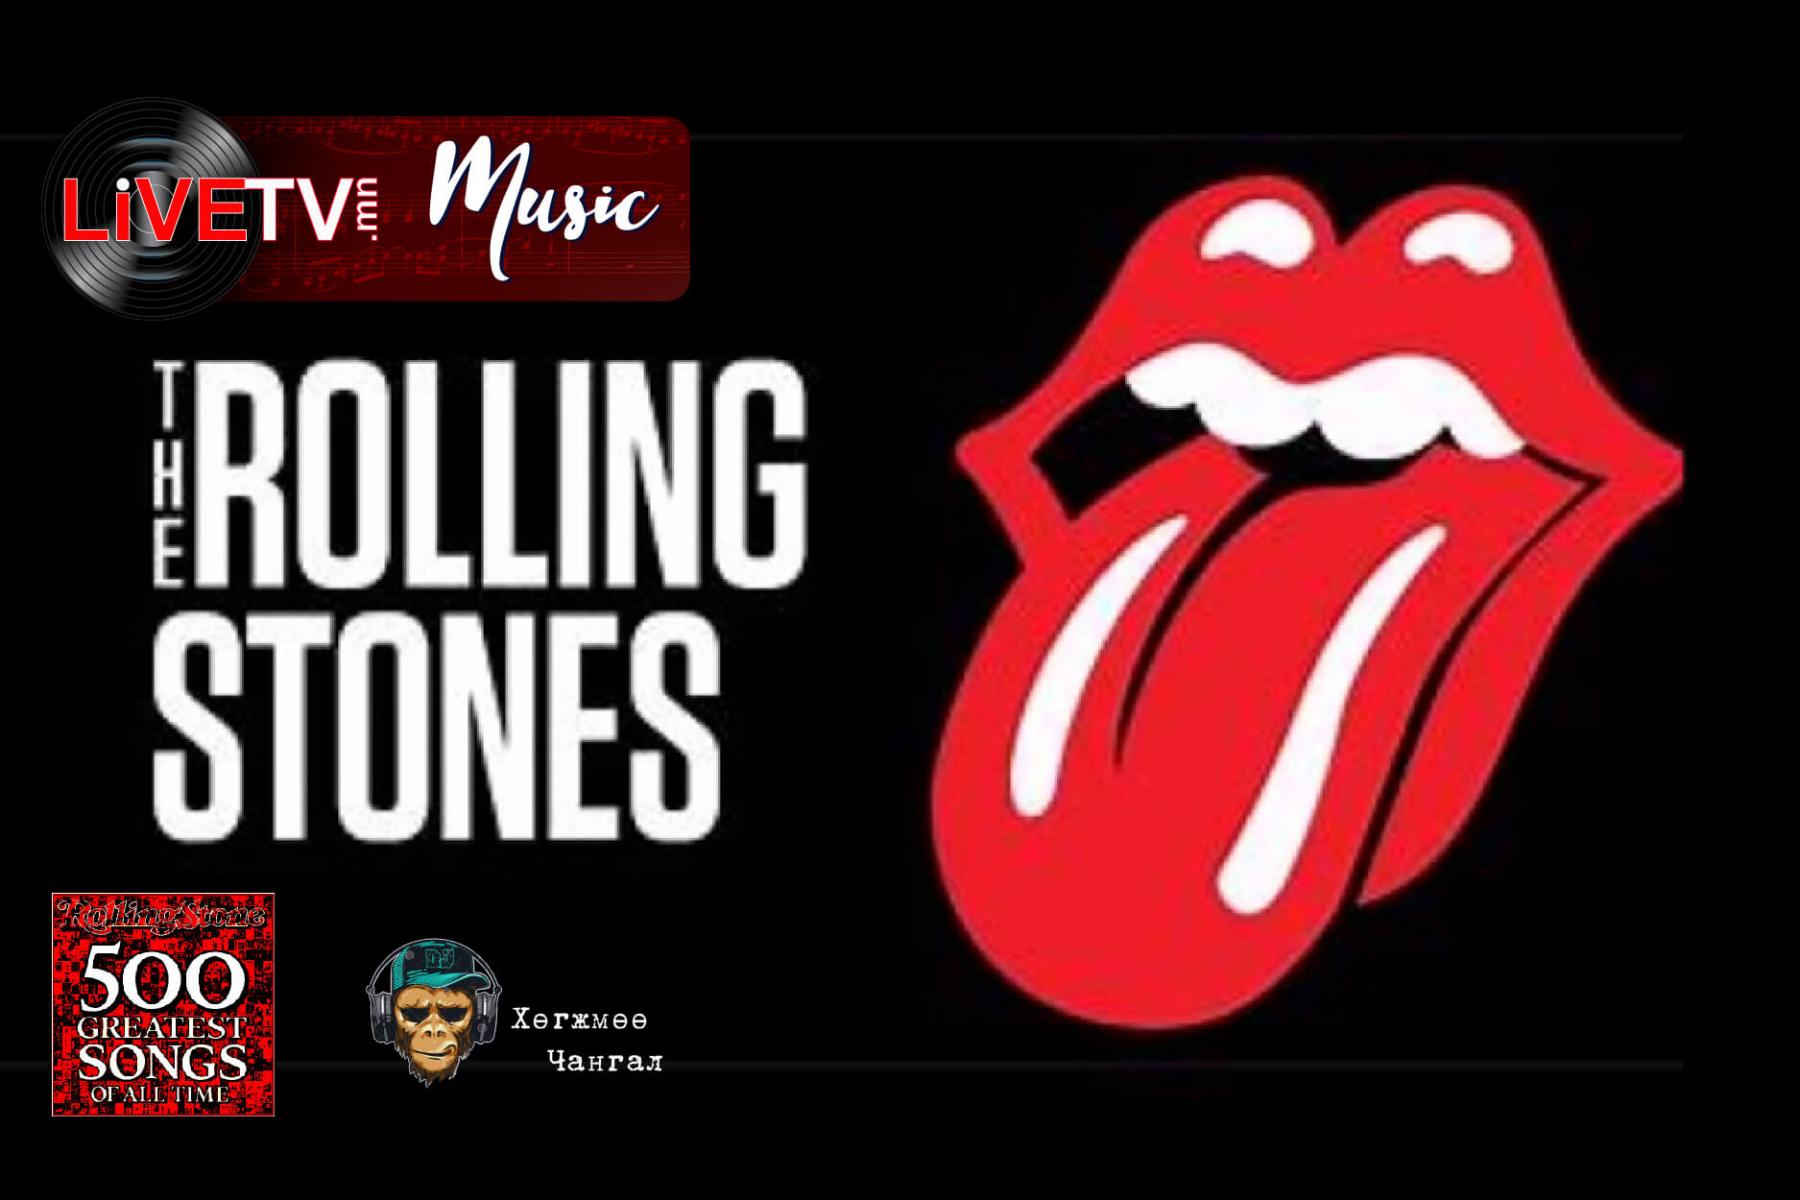 Rolling stones song stoned. Логотип группы Роллинг стоунз. Символ группы Роллинг стоунз. Роллинг стоунз группа язык. Rolling Stones обои.